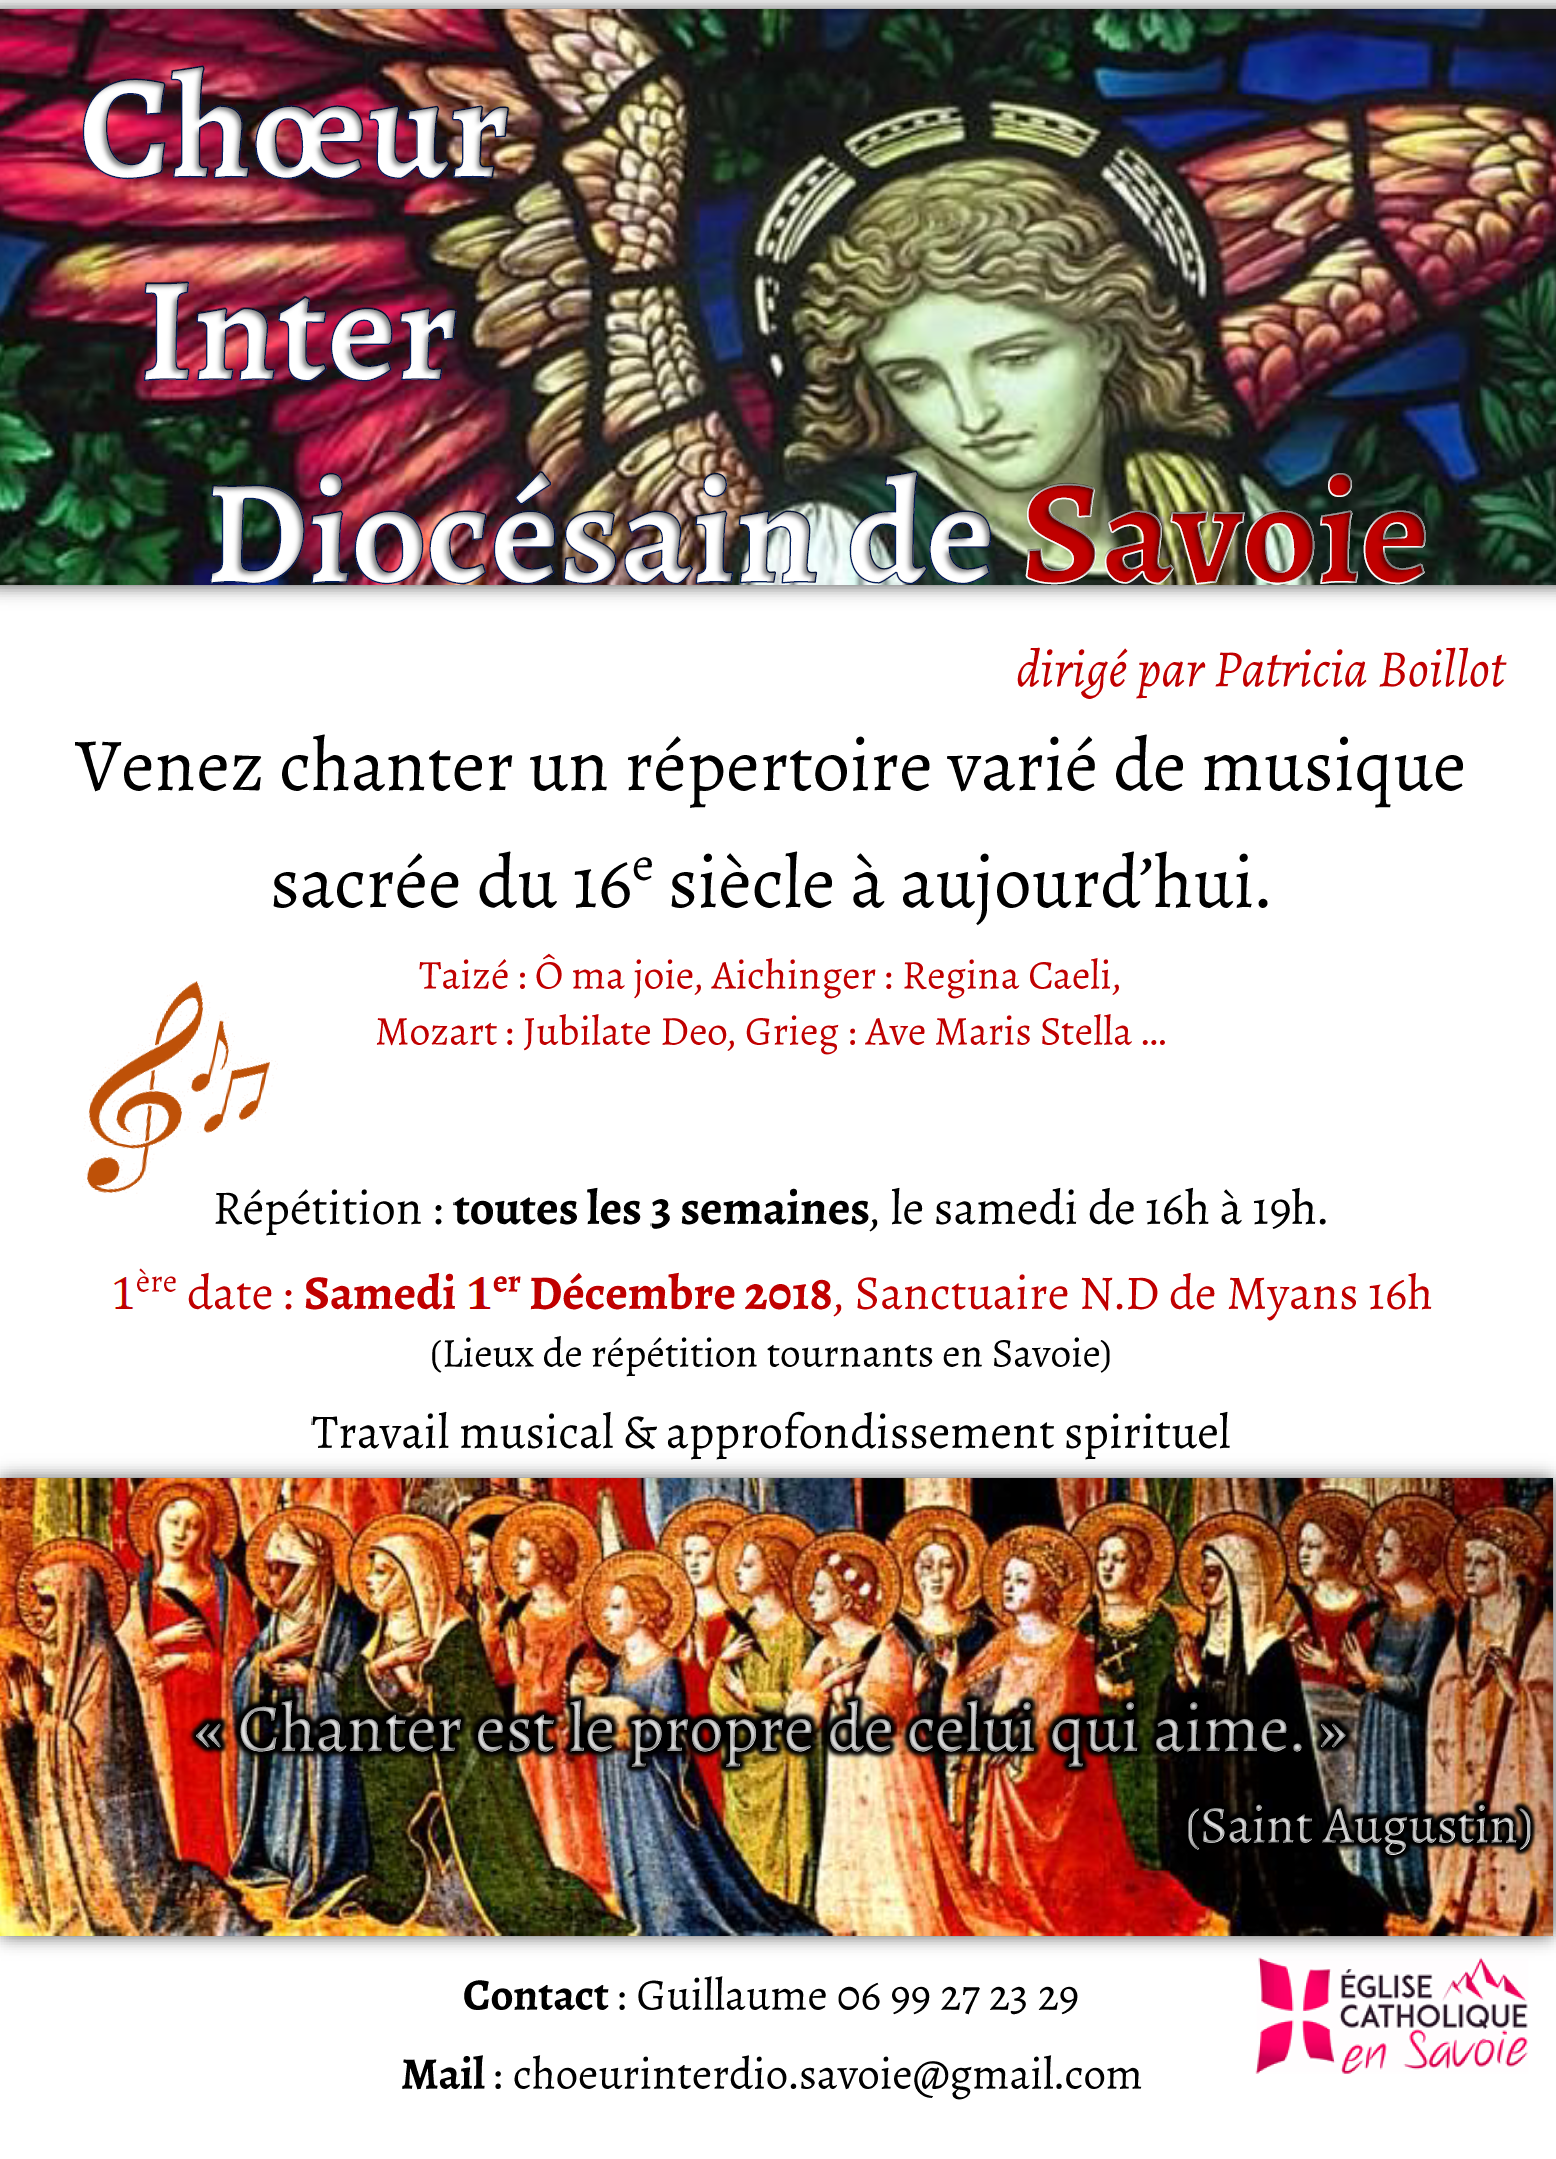 Création d’un chœur inter-diocésain de Savoie – 1ère rencontre le 1er décembre 2018 à Myans (73)